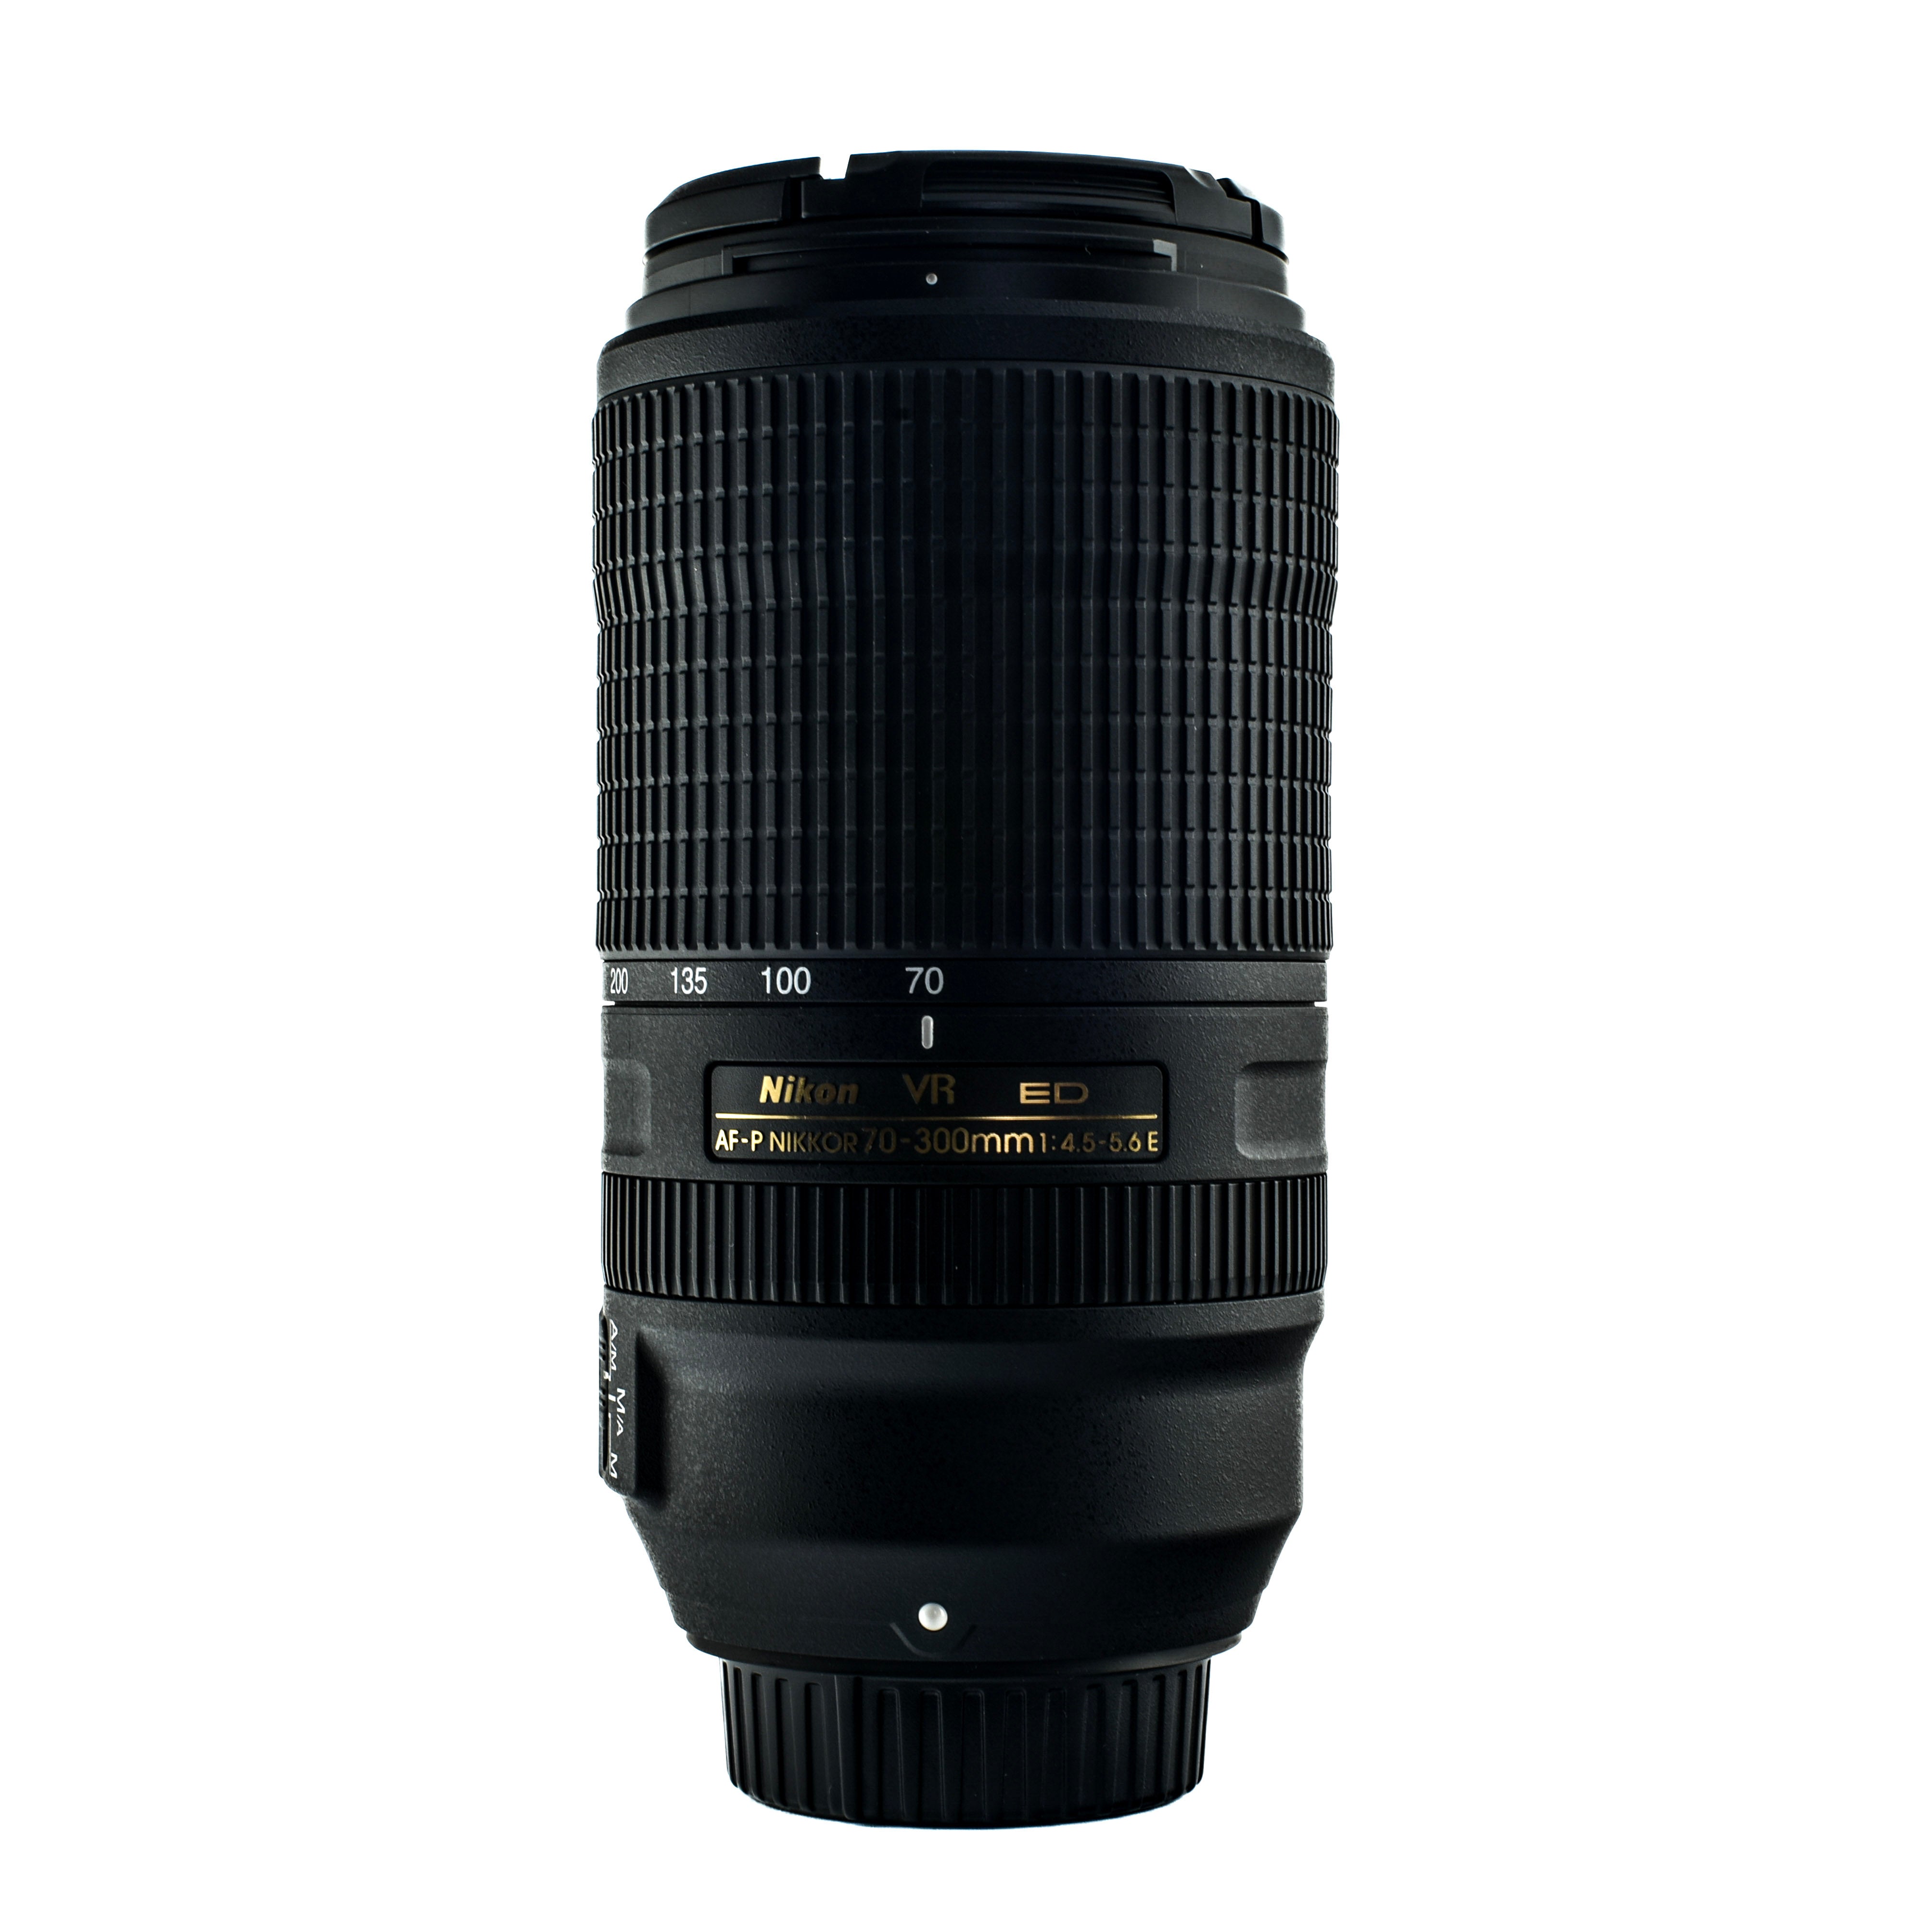 Nikkor 70-300mm Af-P DX f4.5-6.3 G ED VR lens